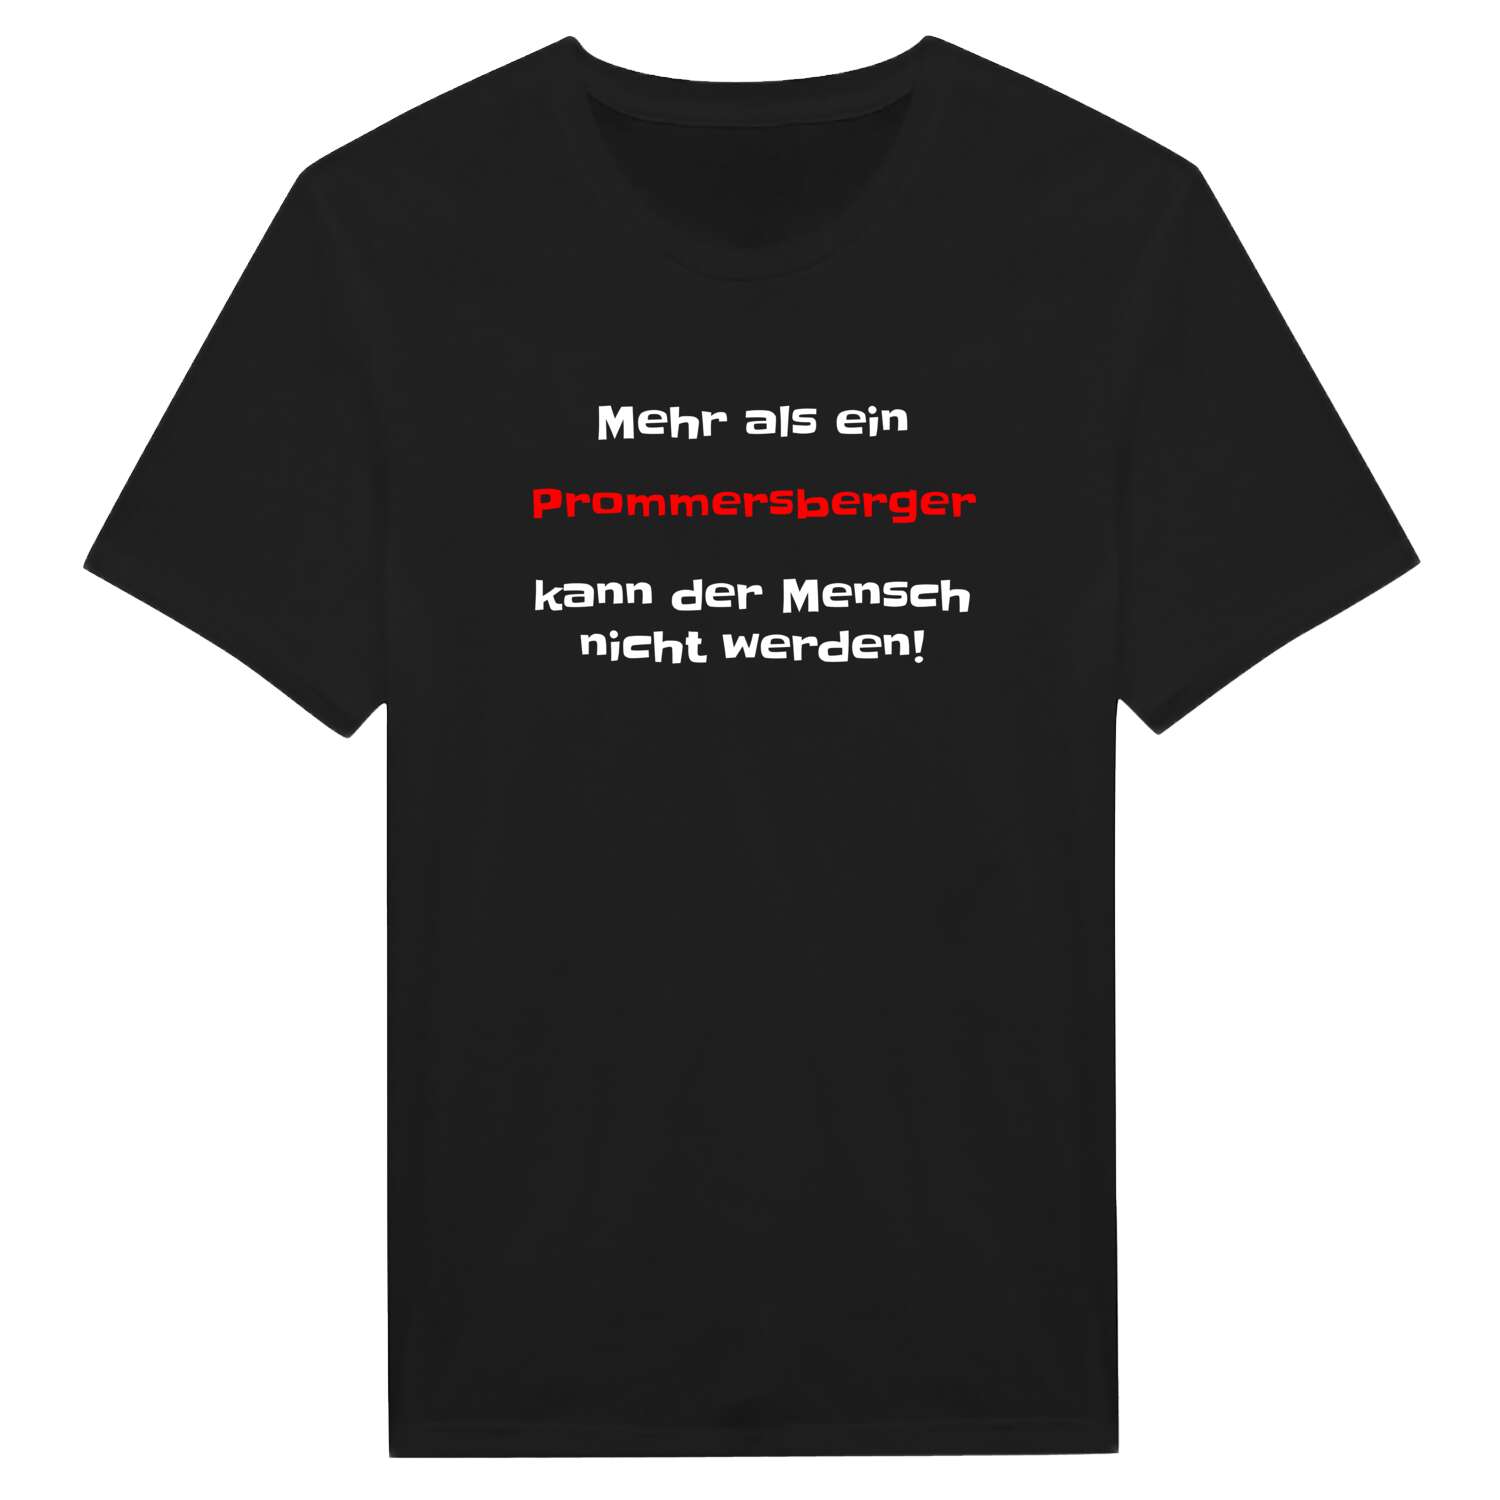 Prommersberg T-Shirt »Mehr als ein«